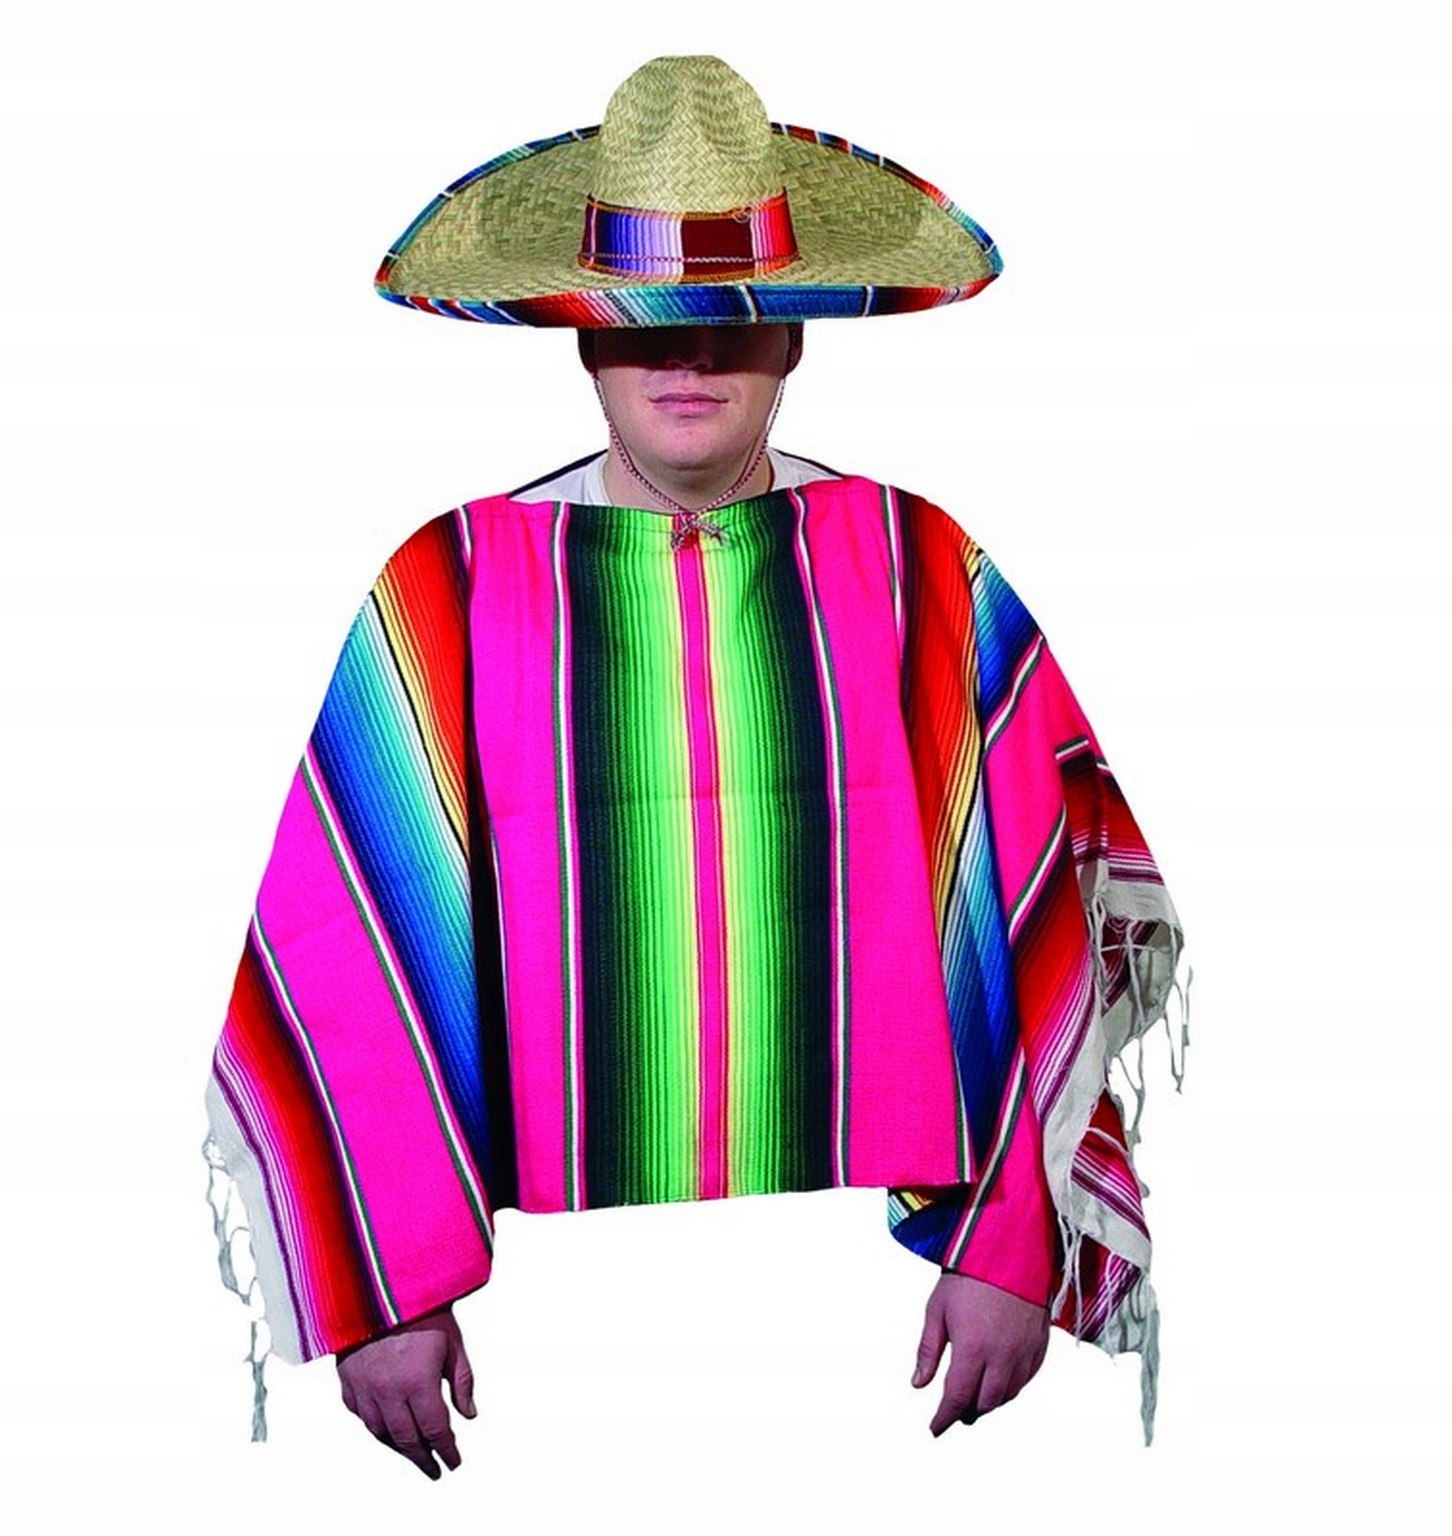 Мексиканская одежда для мужчин